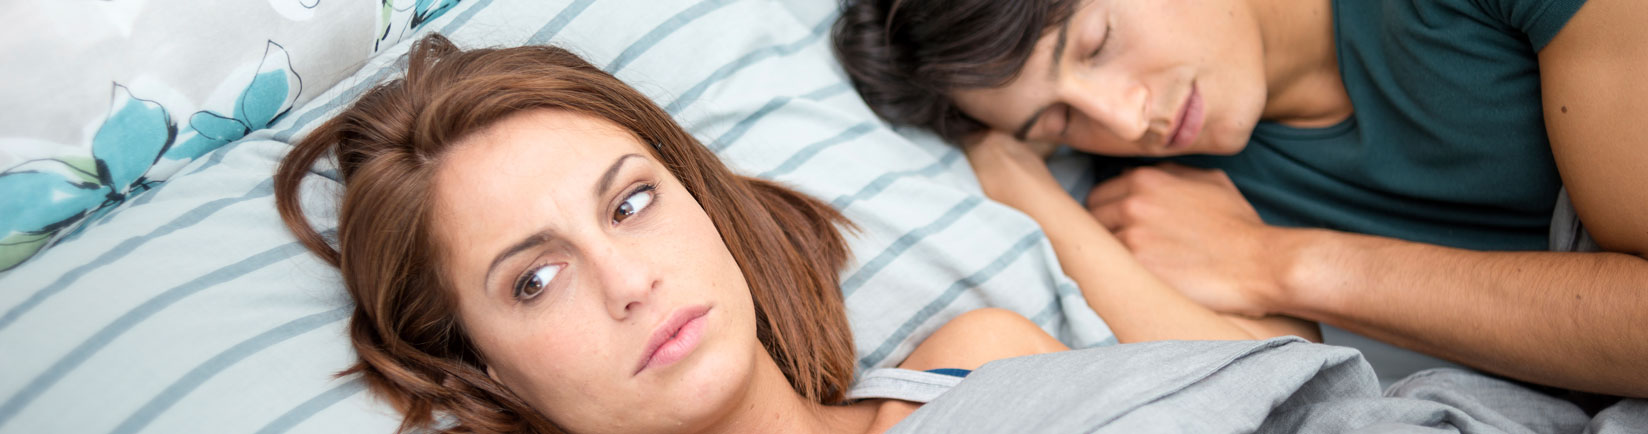 Apneas del sueño: ¿Cómo afecta el Covid-19?